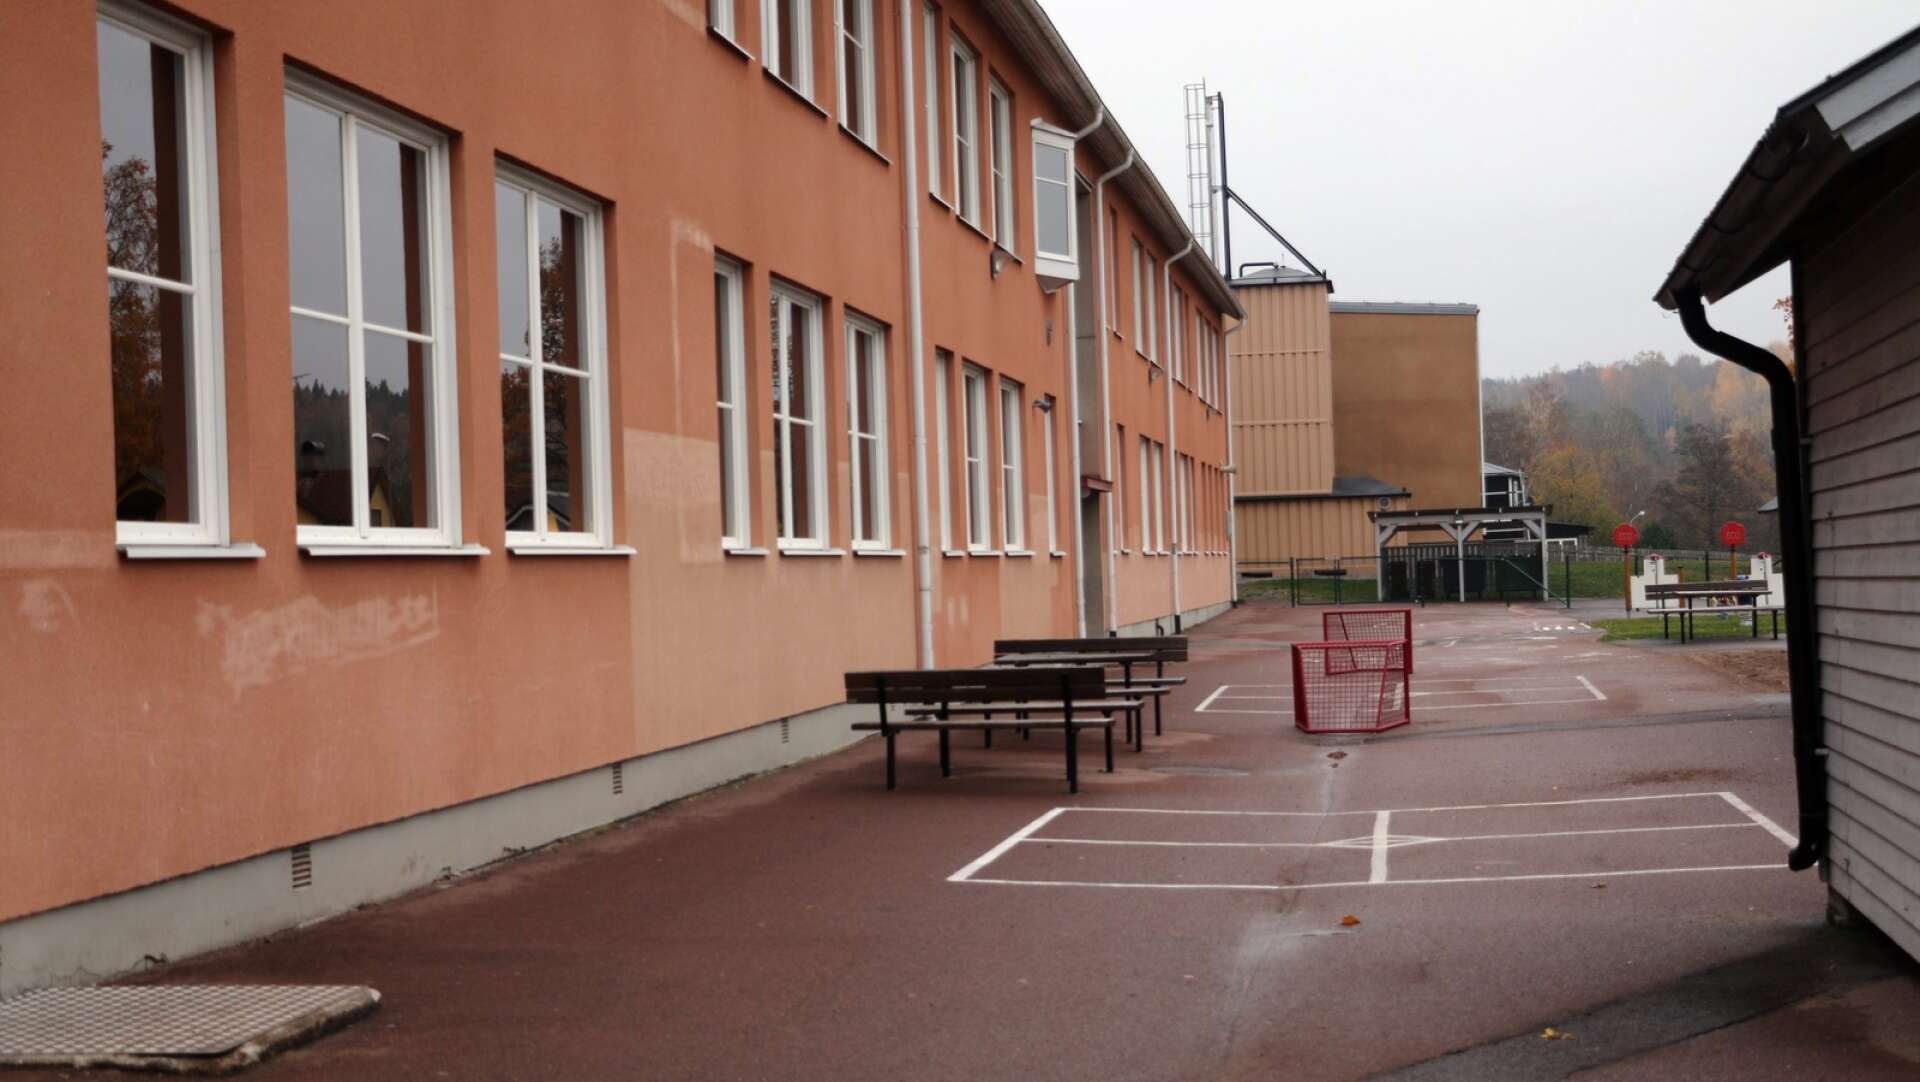 Nykroppa är en av skolorna som på sikt kan komma att läggas ner, enligt förslaget som presenteras i utredaren Tage Nordkvists utredning.